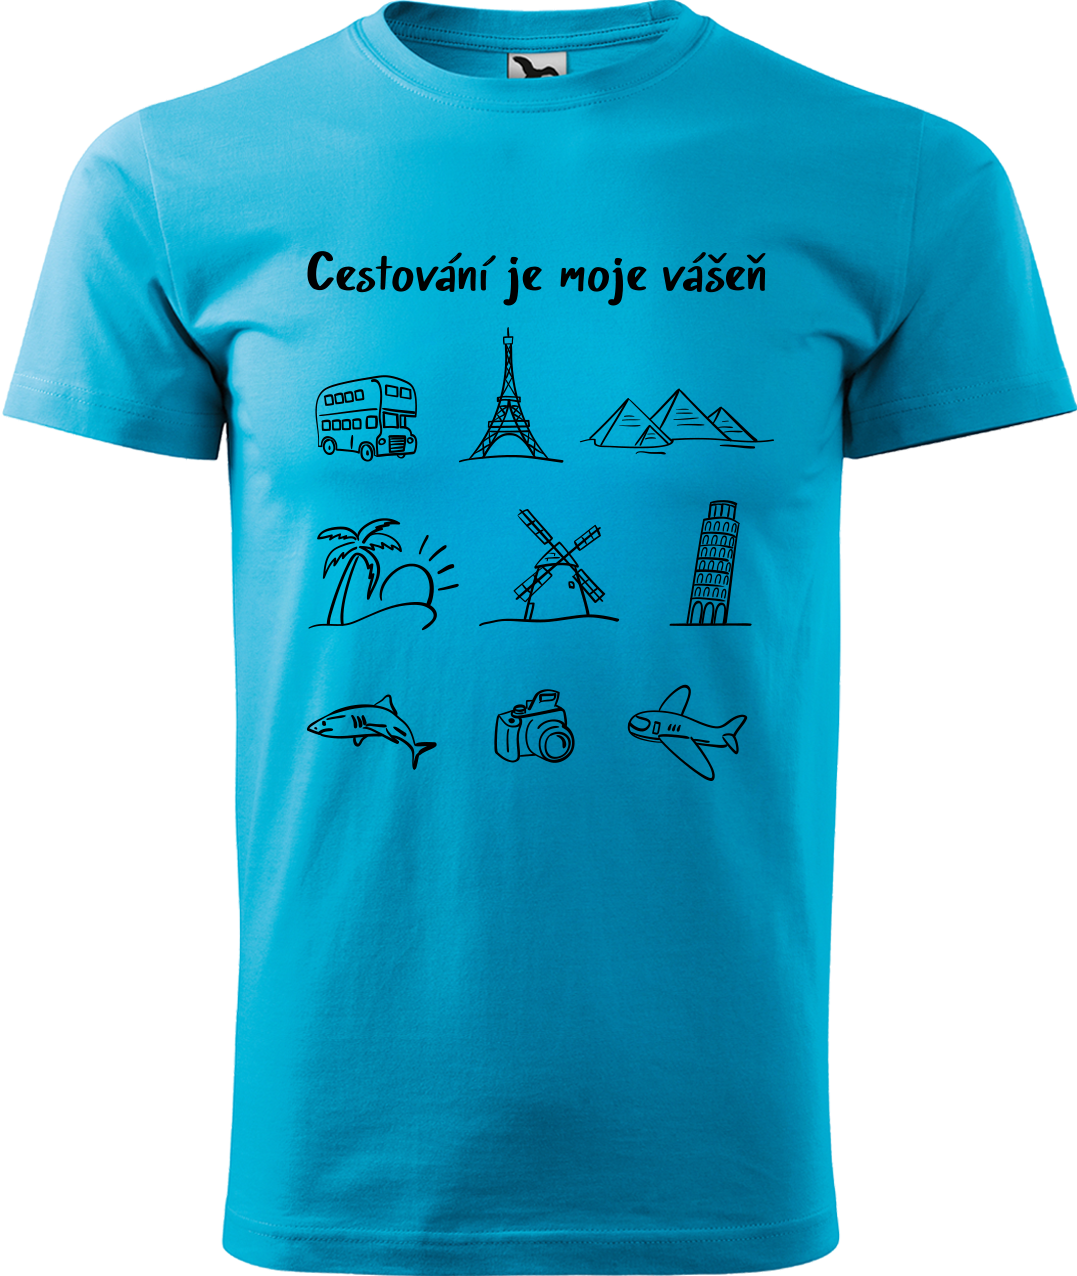 Pánské cestovatelské tričko - Cestování je moje vášeň Velikost: L, Barva: Tyrkysová (44)